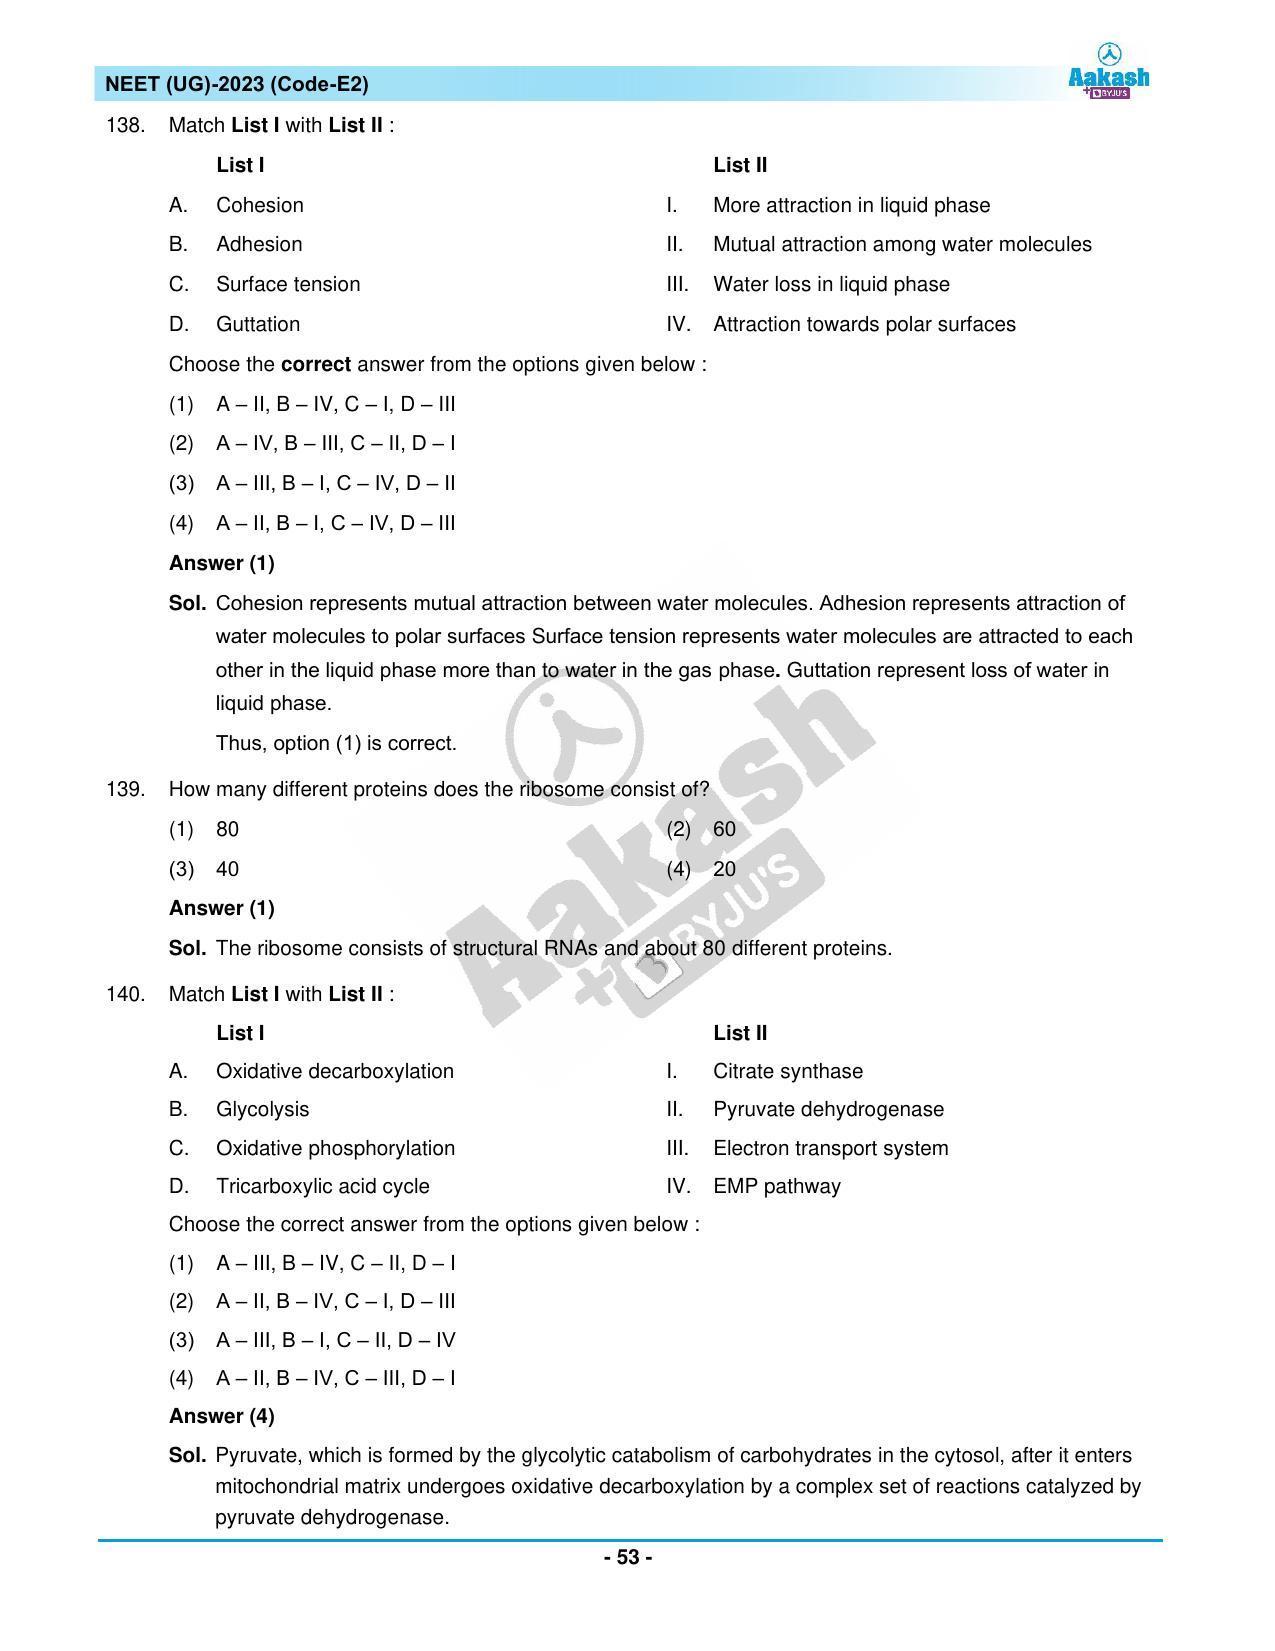 NEET 2023 Question Paper E2 - Page 53